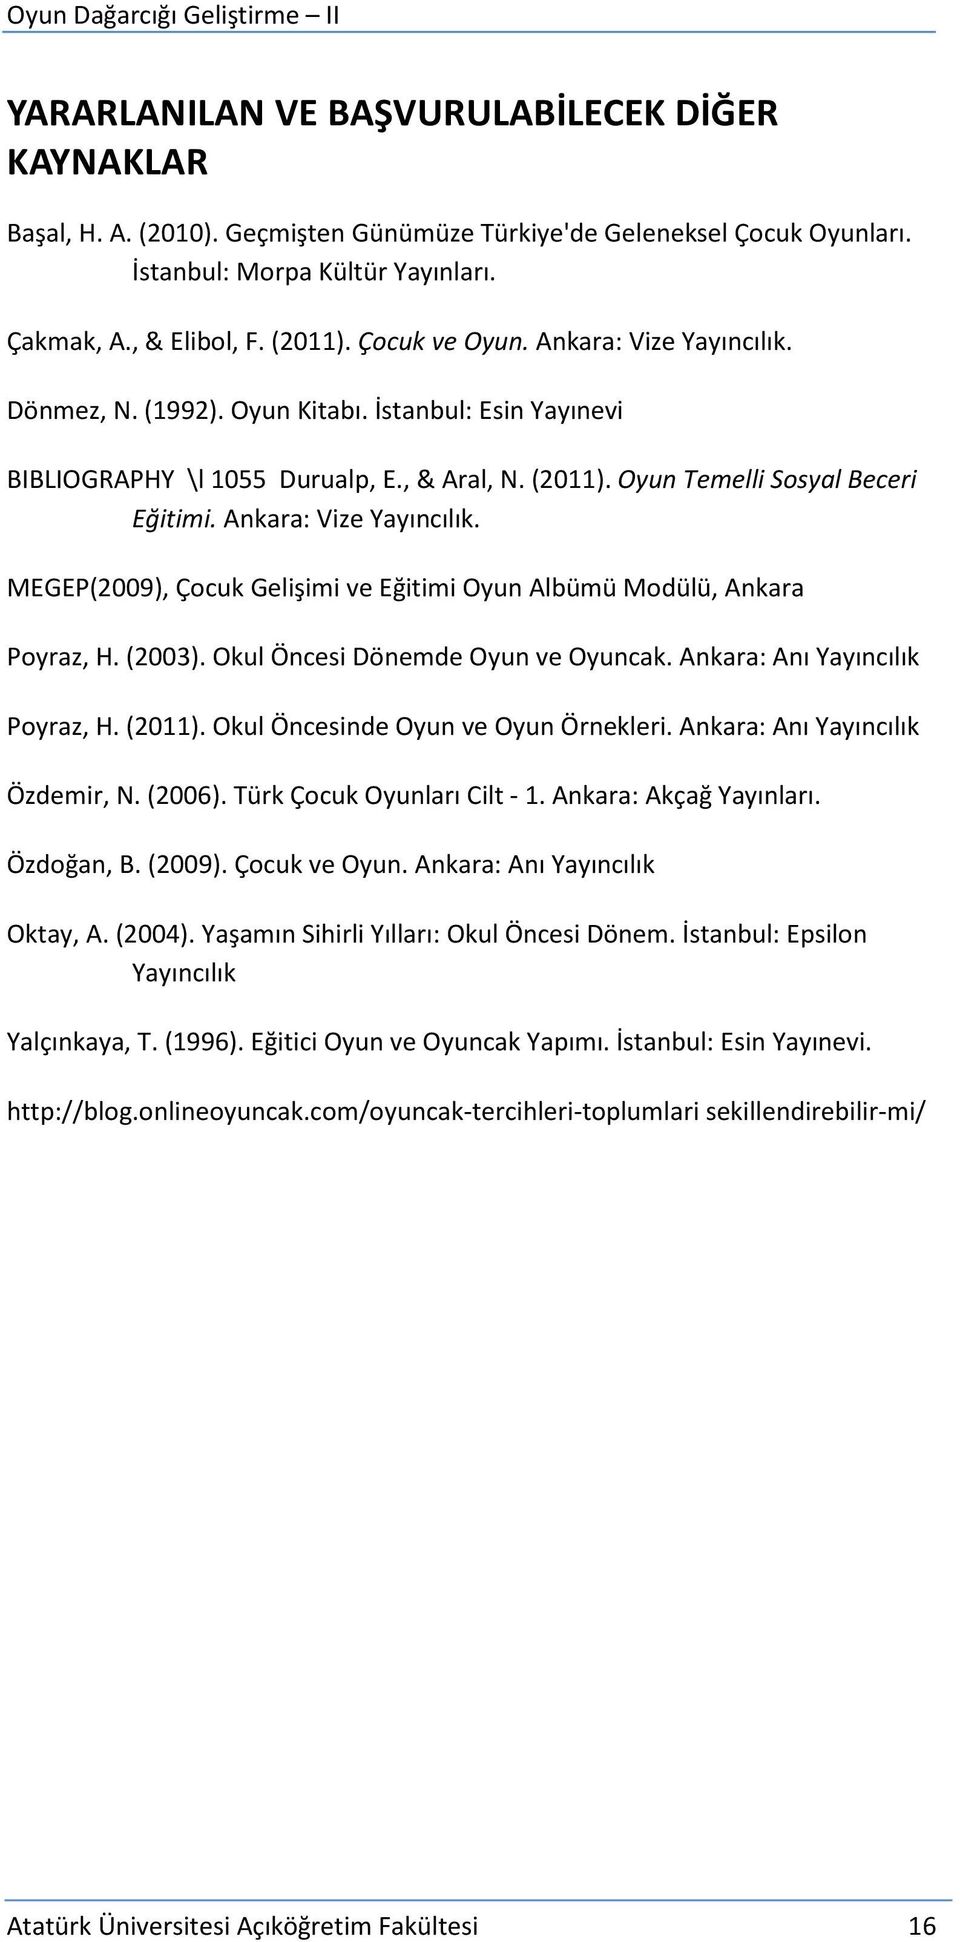 Ankara: Vize Yayıncılık. MEGEP(2009), Çocuk Gelişimi ve Eğitimi Oyun Albümü Modülü, Ankara Poyraz, H. (2003). Okul Öncesi Dönemde Oyun ve Oyuncak. Ankara: Anı Yayıncılık Poyraz, H. (2011).